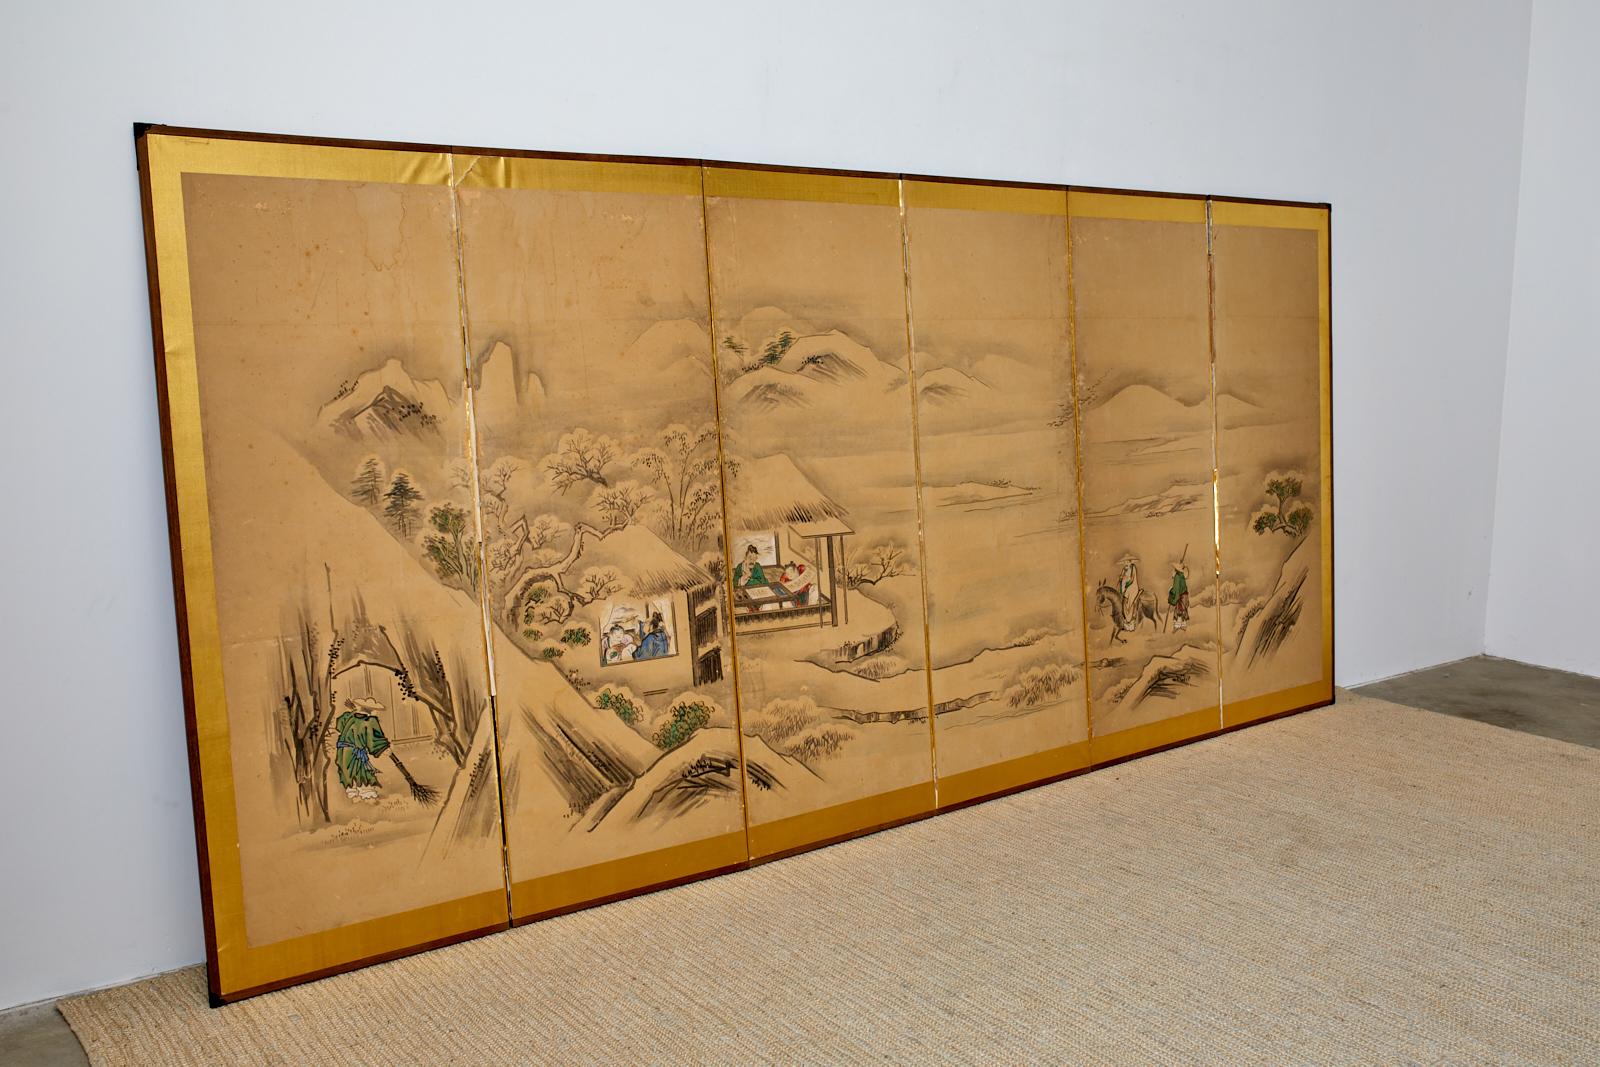 Grand paravent japonais à six panneaux d'époque Meiji représentant un paysage hivernal avec un sage chinois rendant visite à des amis dans une villa de campagne. Encre et pigments de couleurs vives sur papier mûrier monté sur un fond doré. Peint